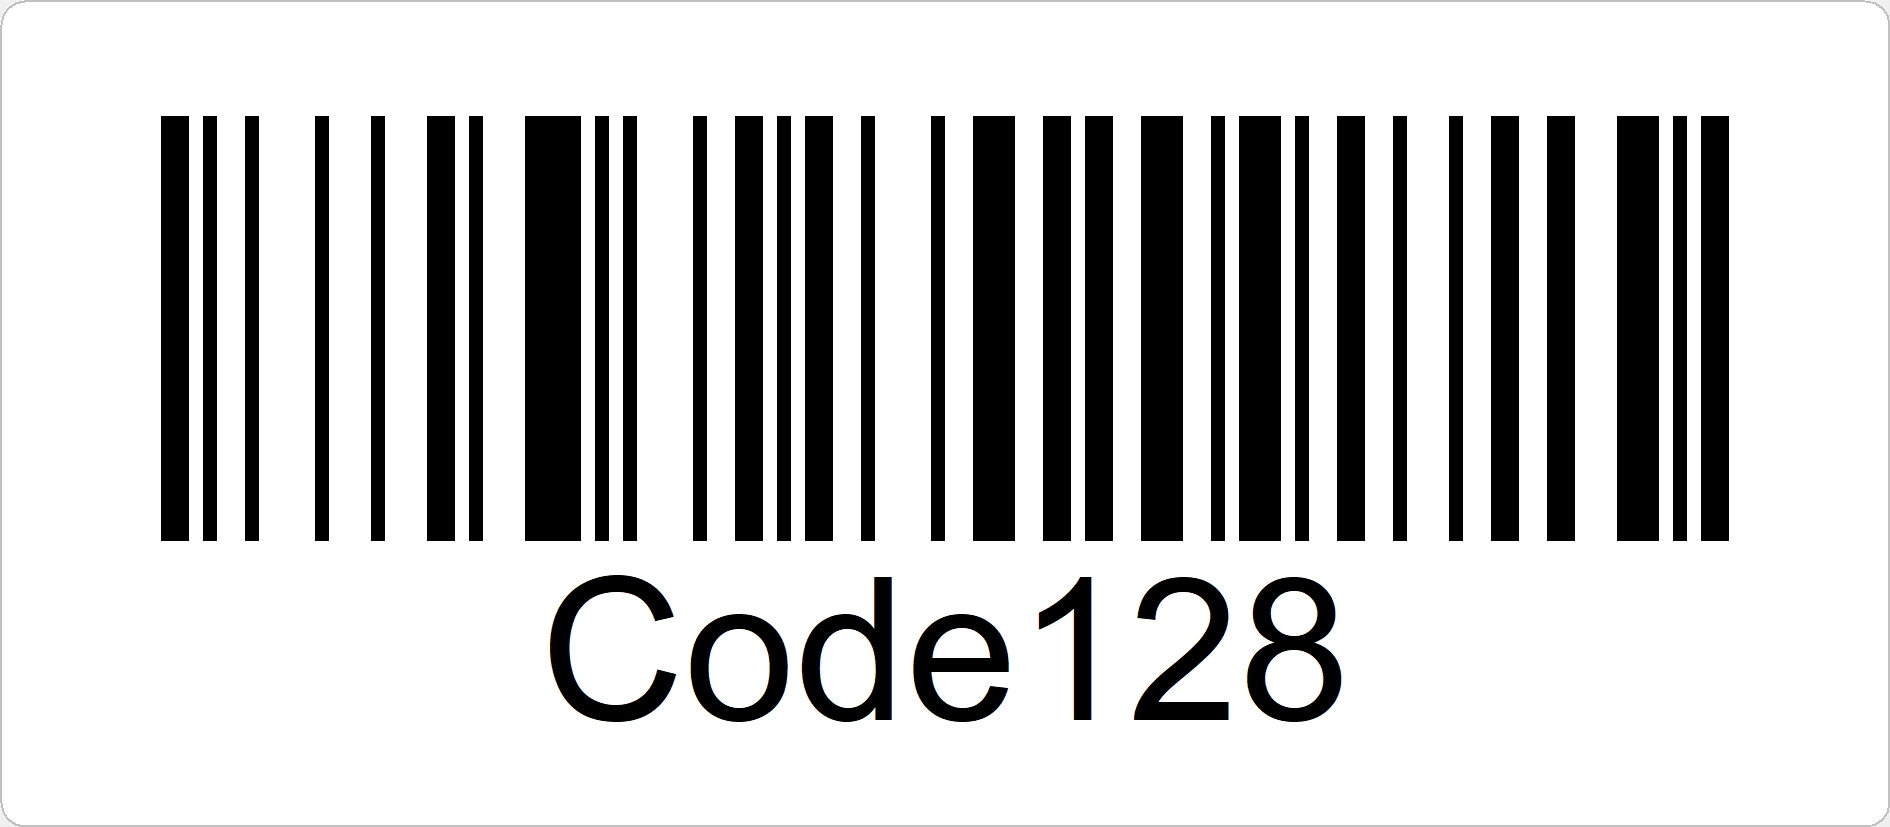 Code128 ist ein universeller Strichcode mit hoher Informationsdichte